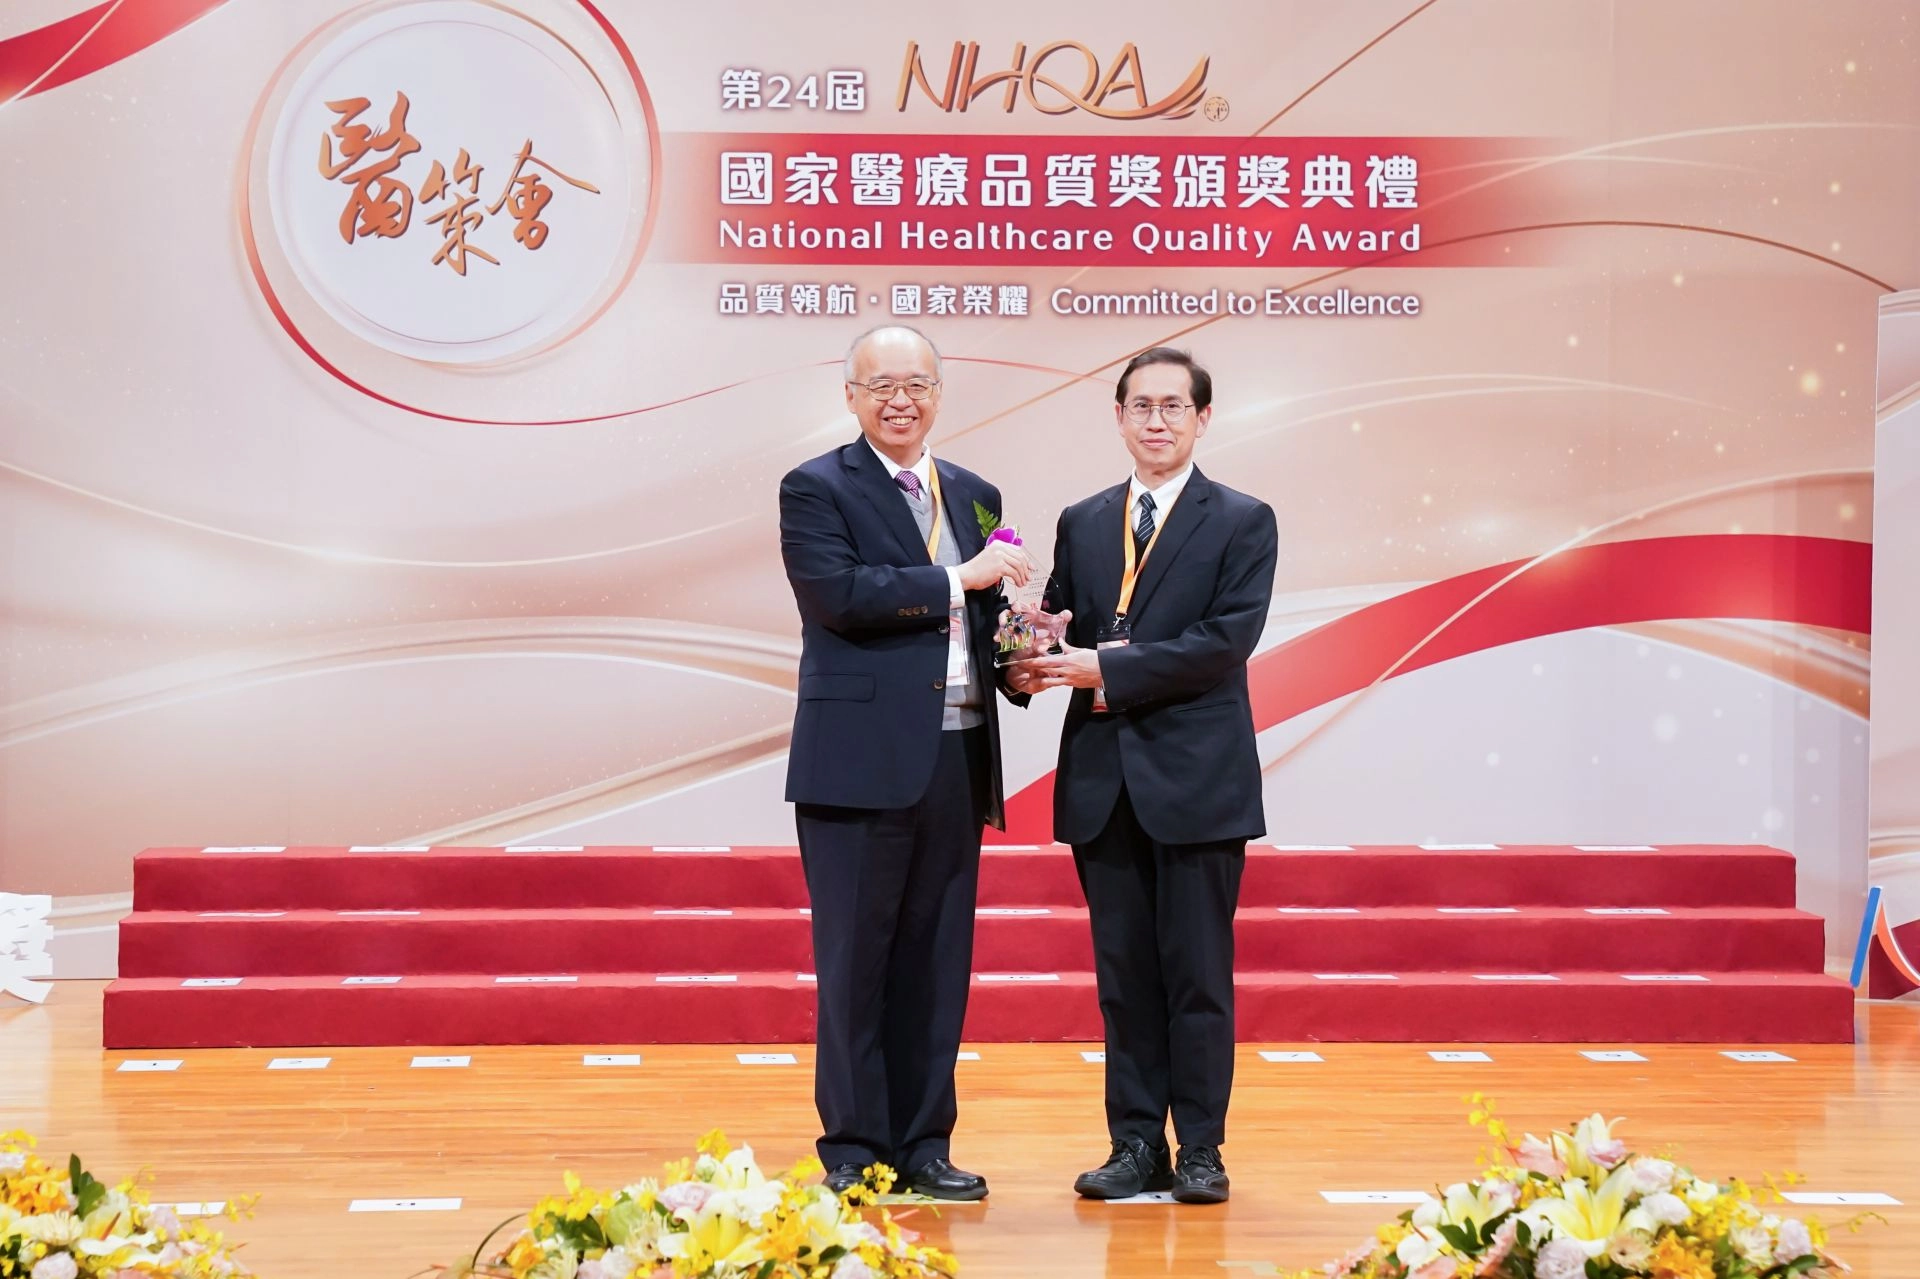 台北慈濟醫院鄭敬楓副院長代表獲獎。